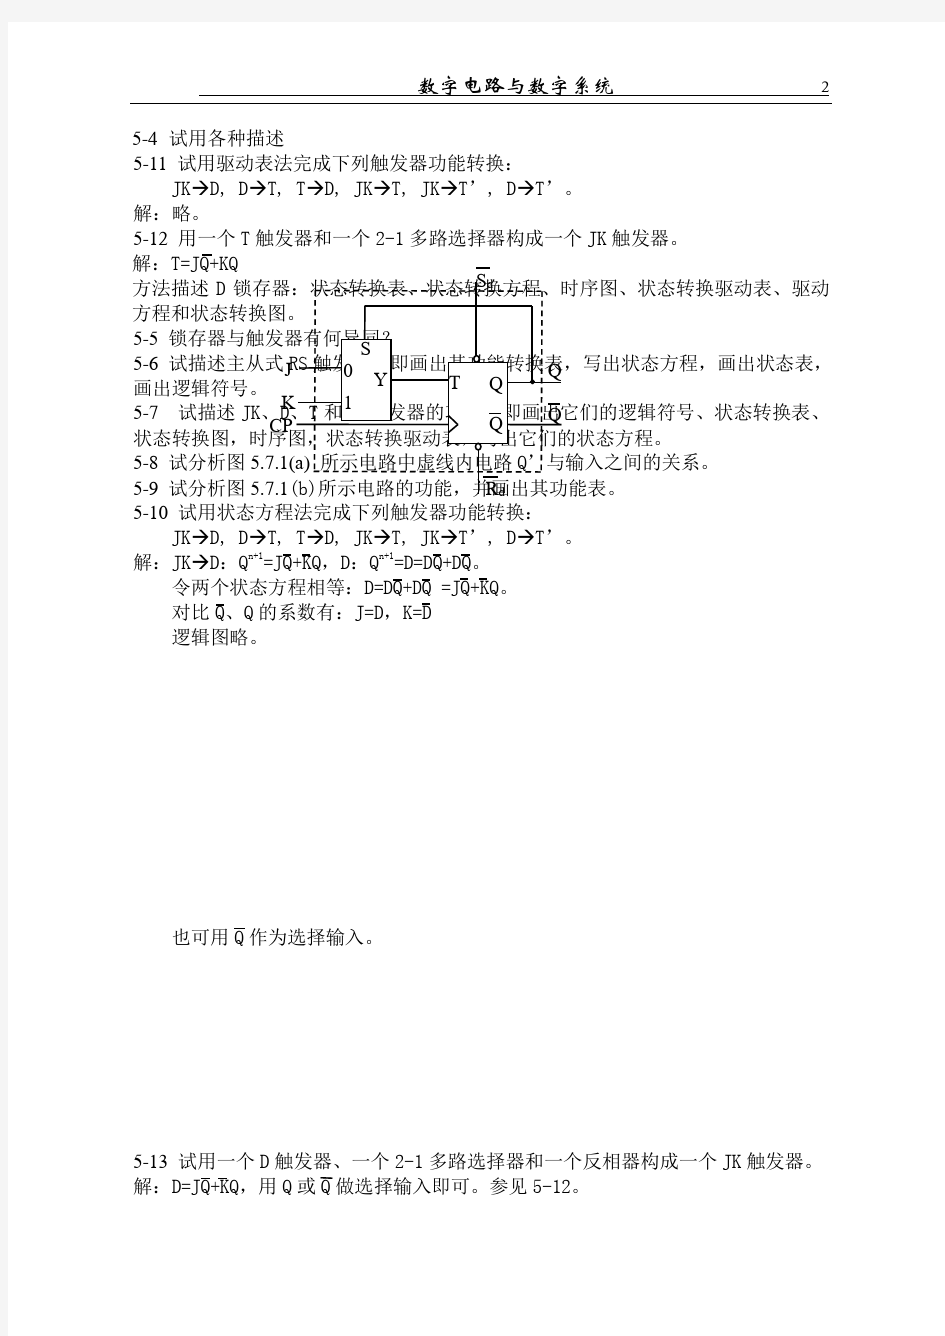 《数字电路-分析与设计》1--10章习题及解答(部分)_北京理工大学出版社